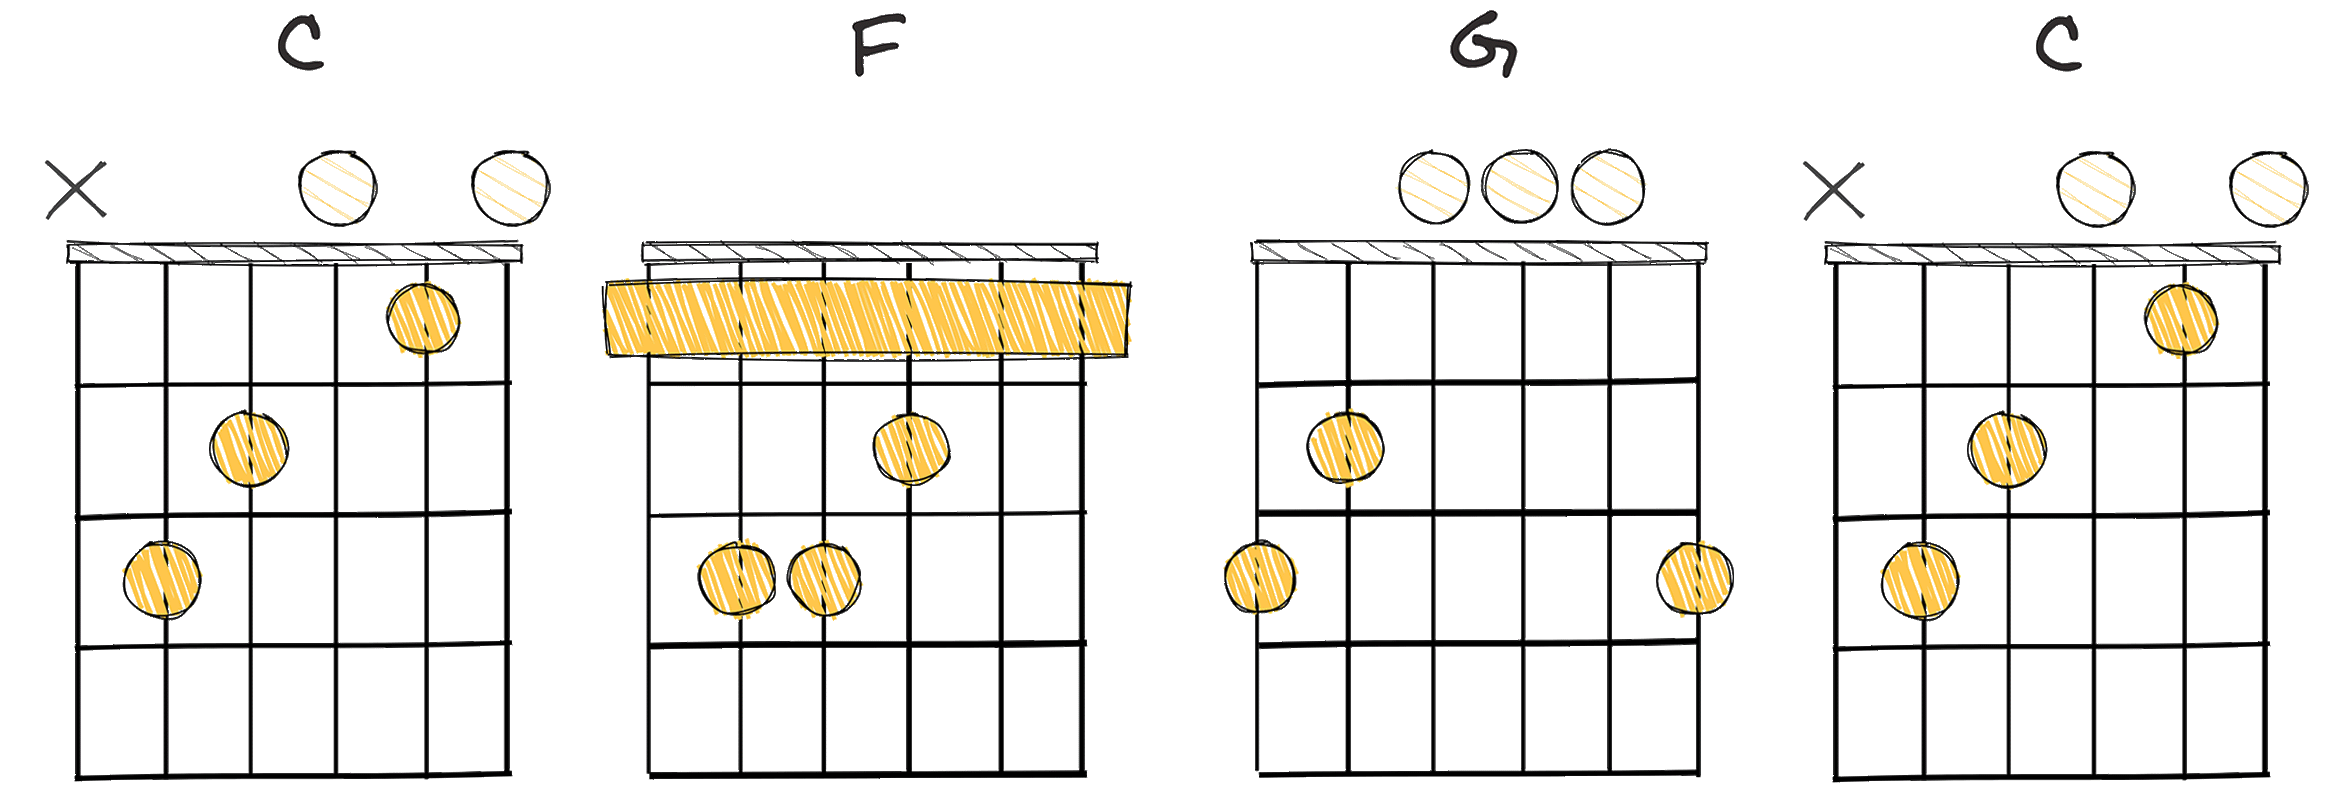 I - IV - V - I  (1-4-5-1) chords diagram